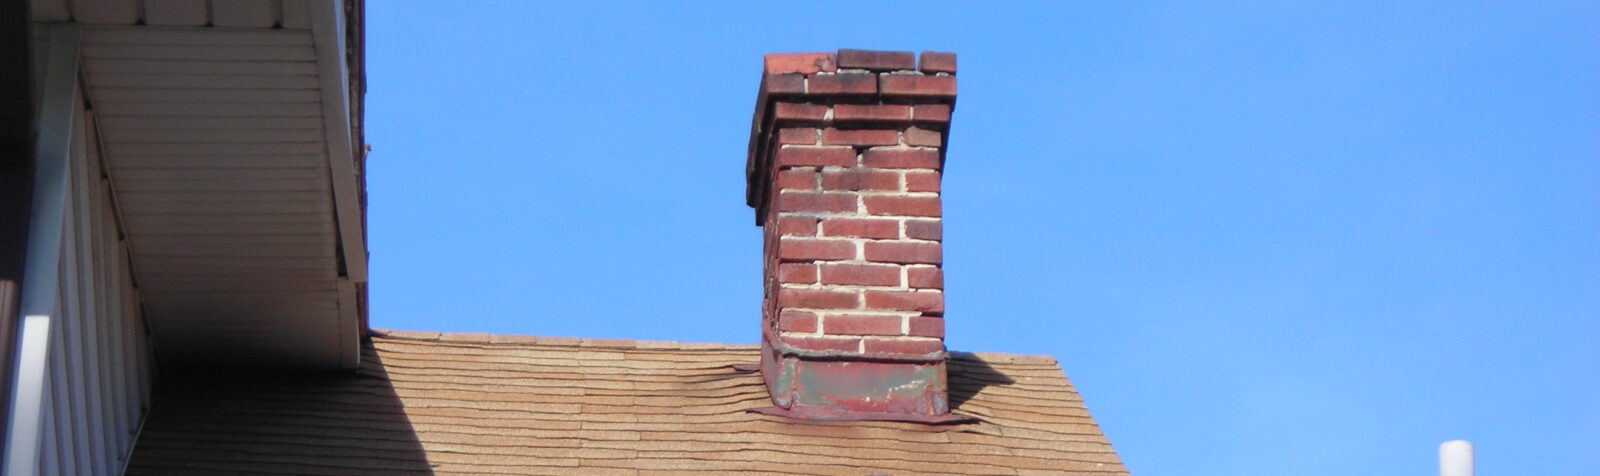 Masonry chimney in need of repair